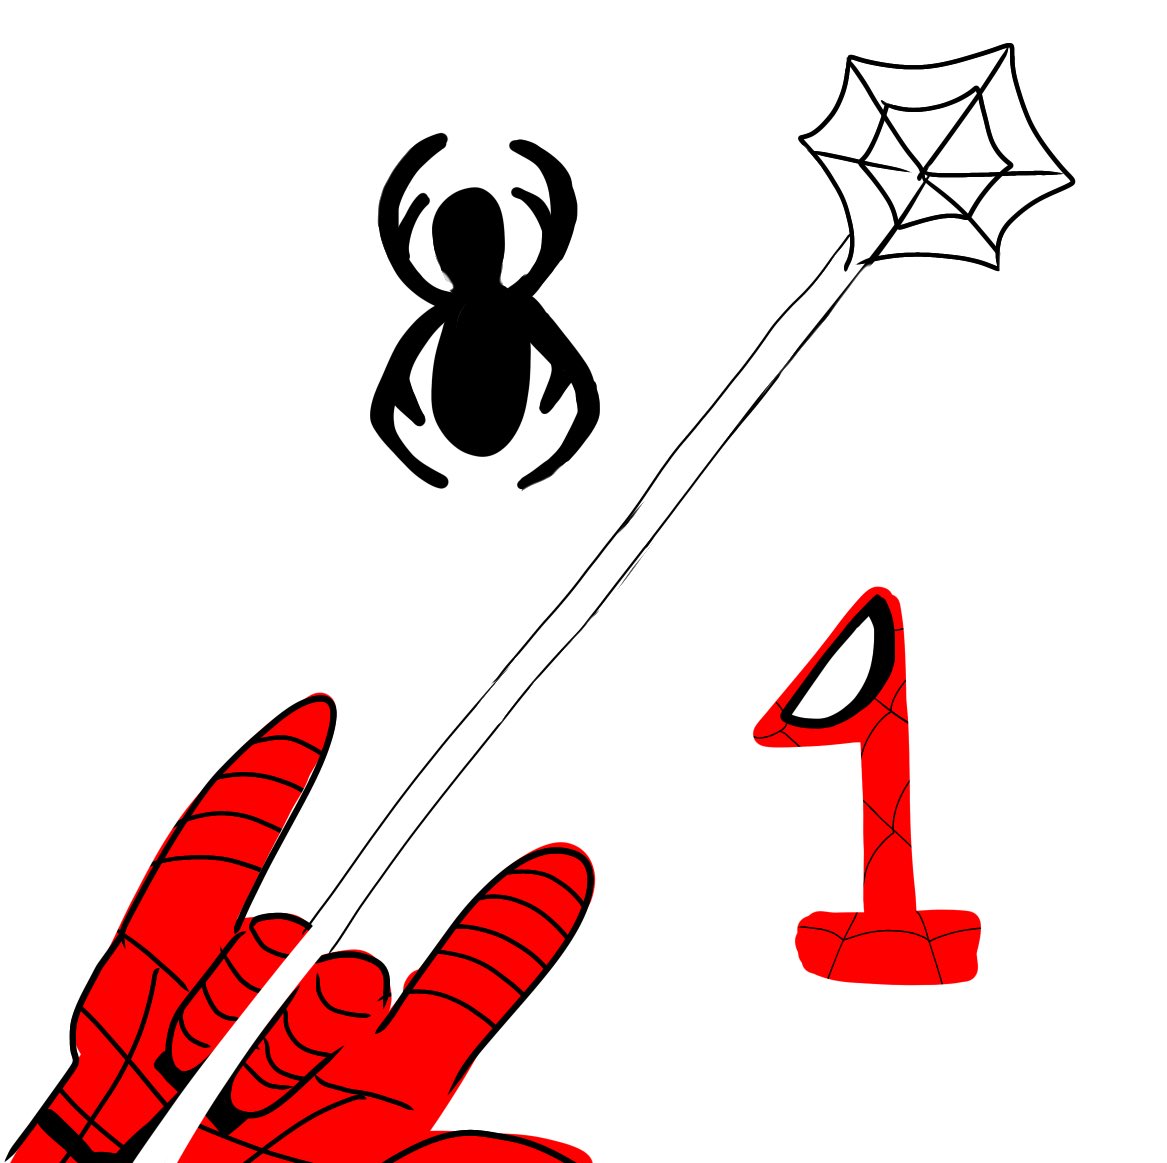 「#SpiderManDay  8/1    アメリカ時間ならまだおっけい!()」|みかんとまん🦦🎨のイラスト